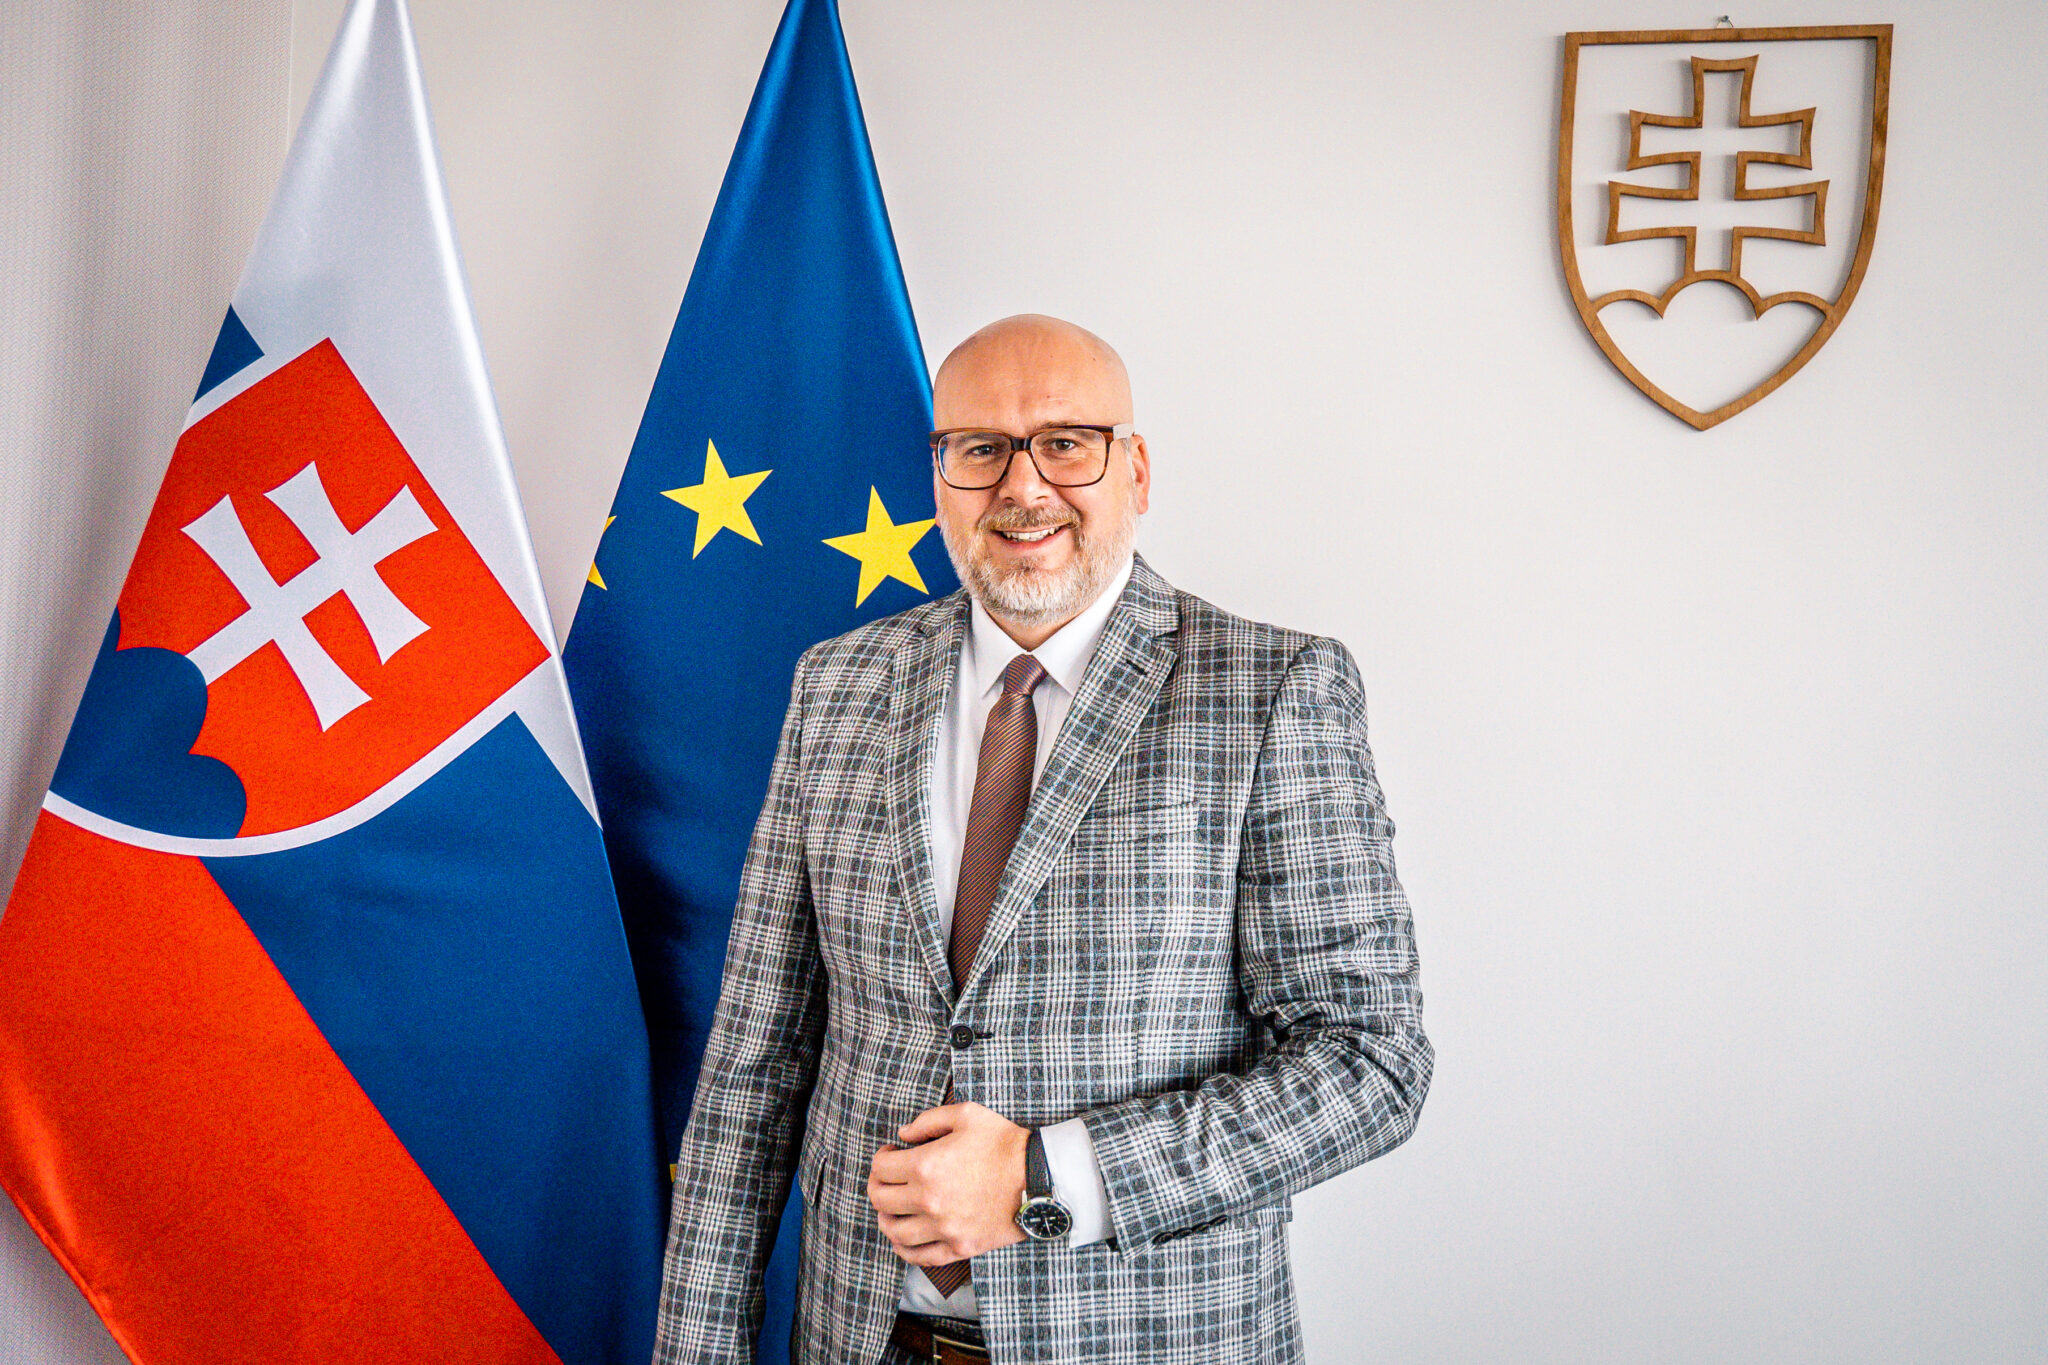 Štátny tajomník Michal Kaliňák pred pracovnou cestou v Prahe: Pri lepšom nastavení regionálneho rozvoja nám pomôže výmena skúseností s Českom